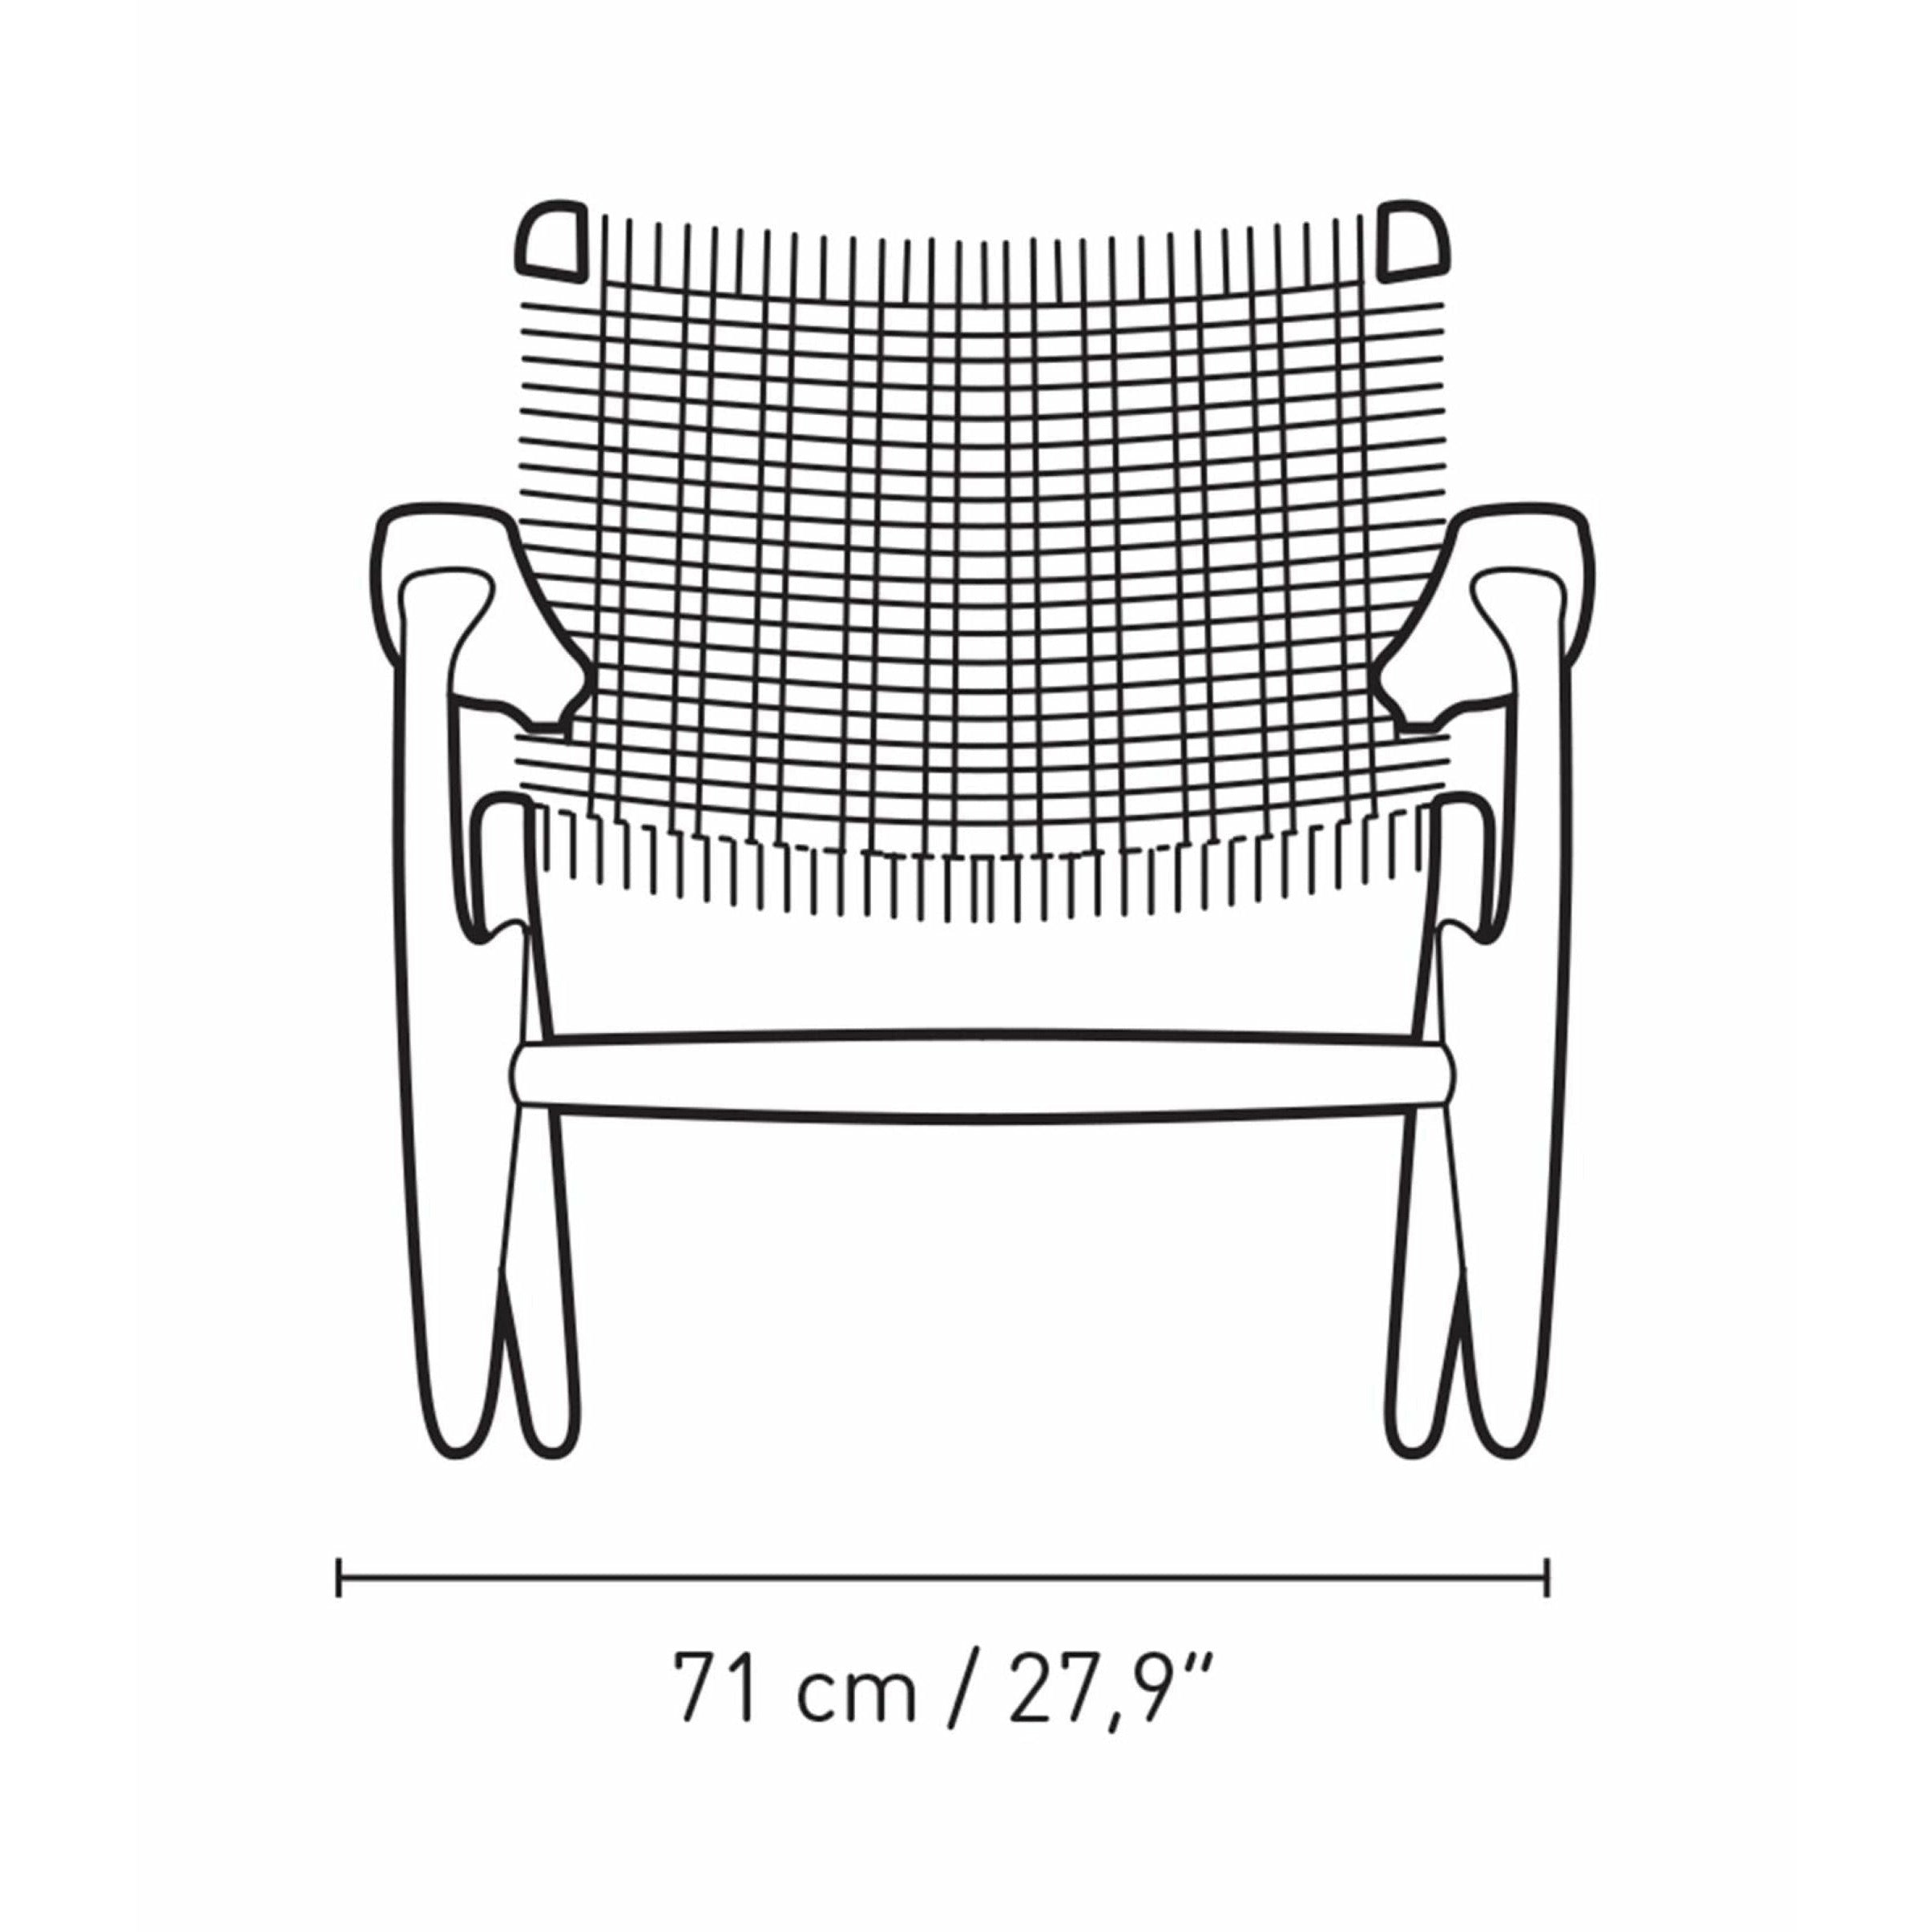 Carl Hansen CH25 Lounge stol eg, tanggrøn/naturlig ledning